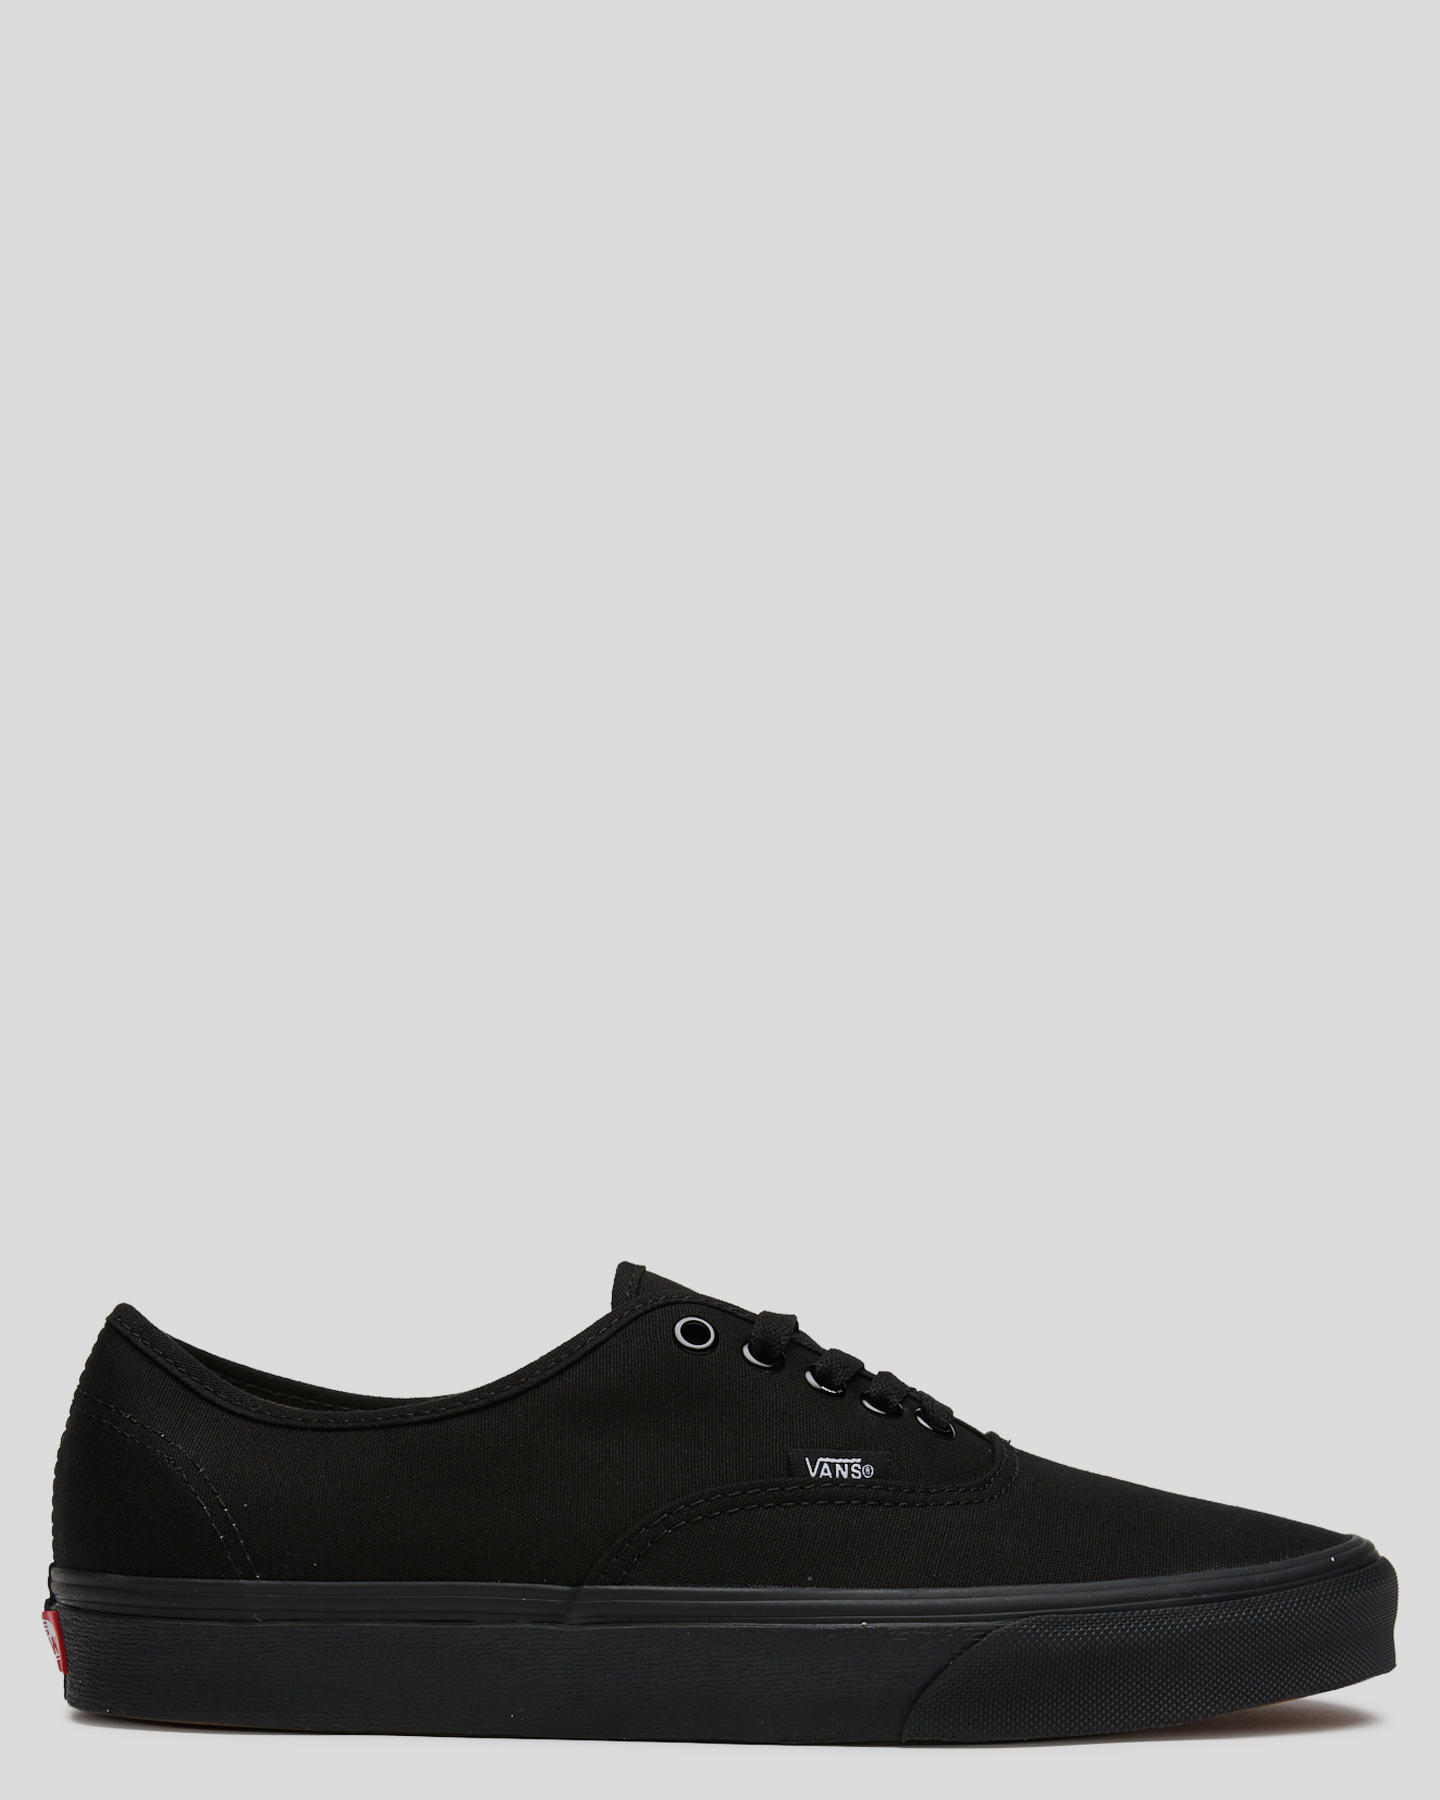 Vans Authentic Shoe - Black/Black | SurfStitch